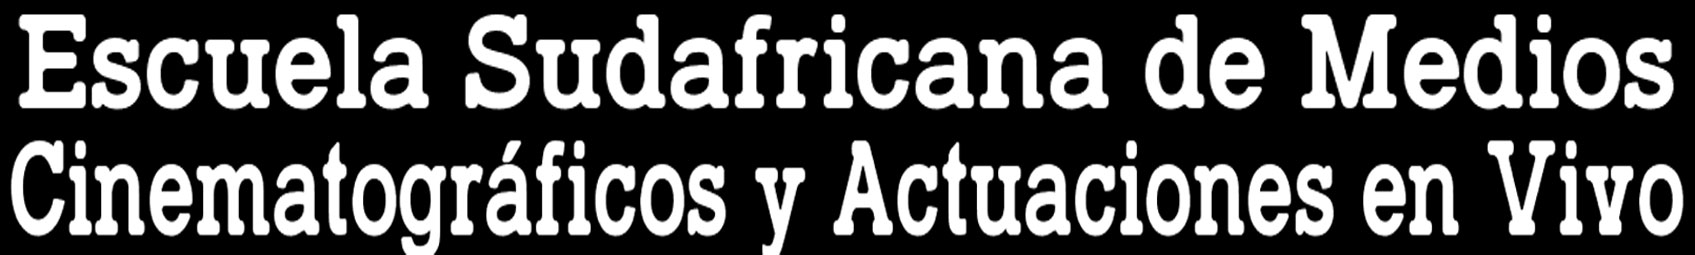 Escuela Sudafricana de Medios Cinematogrficos y Actuaciones en Vivo